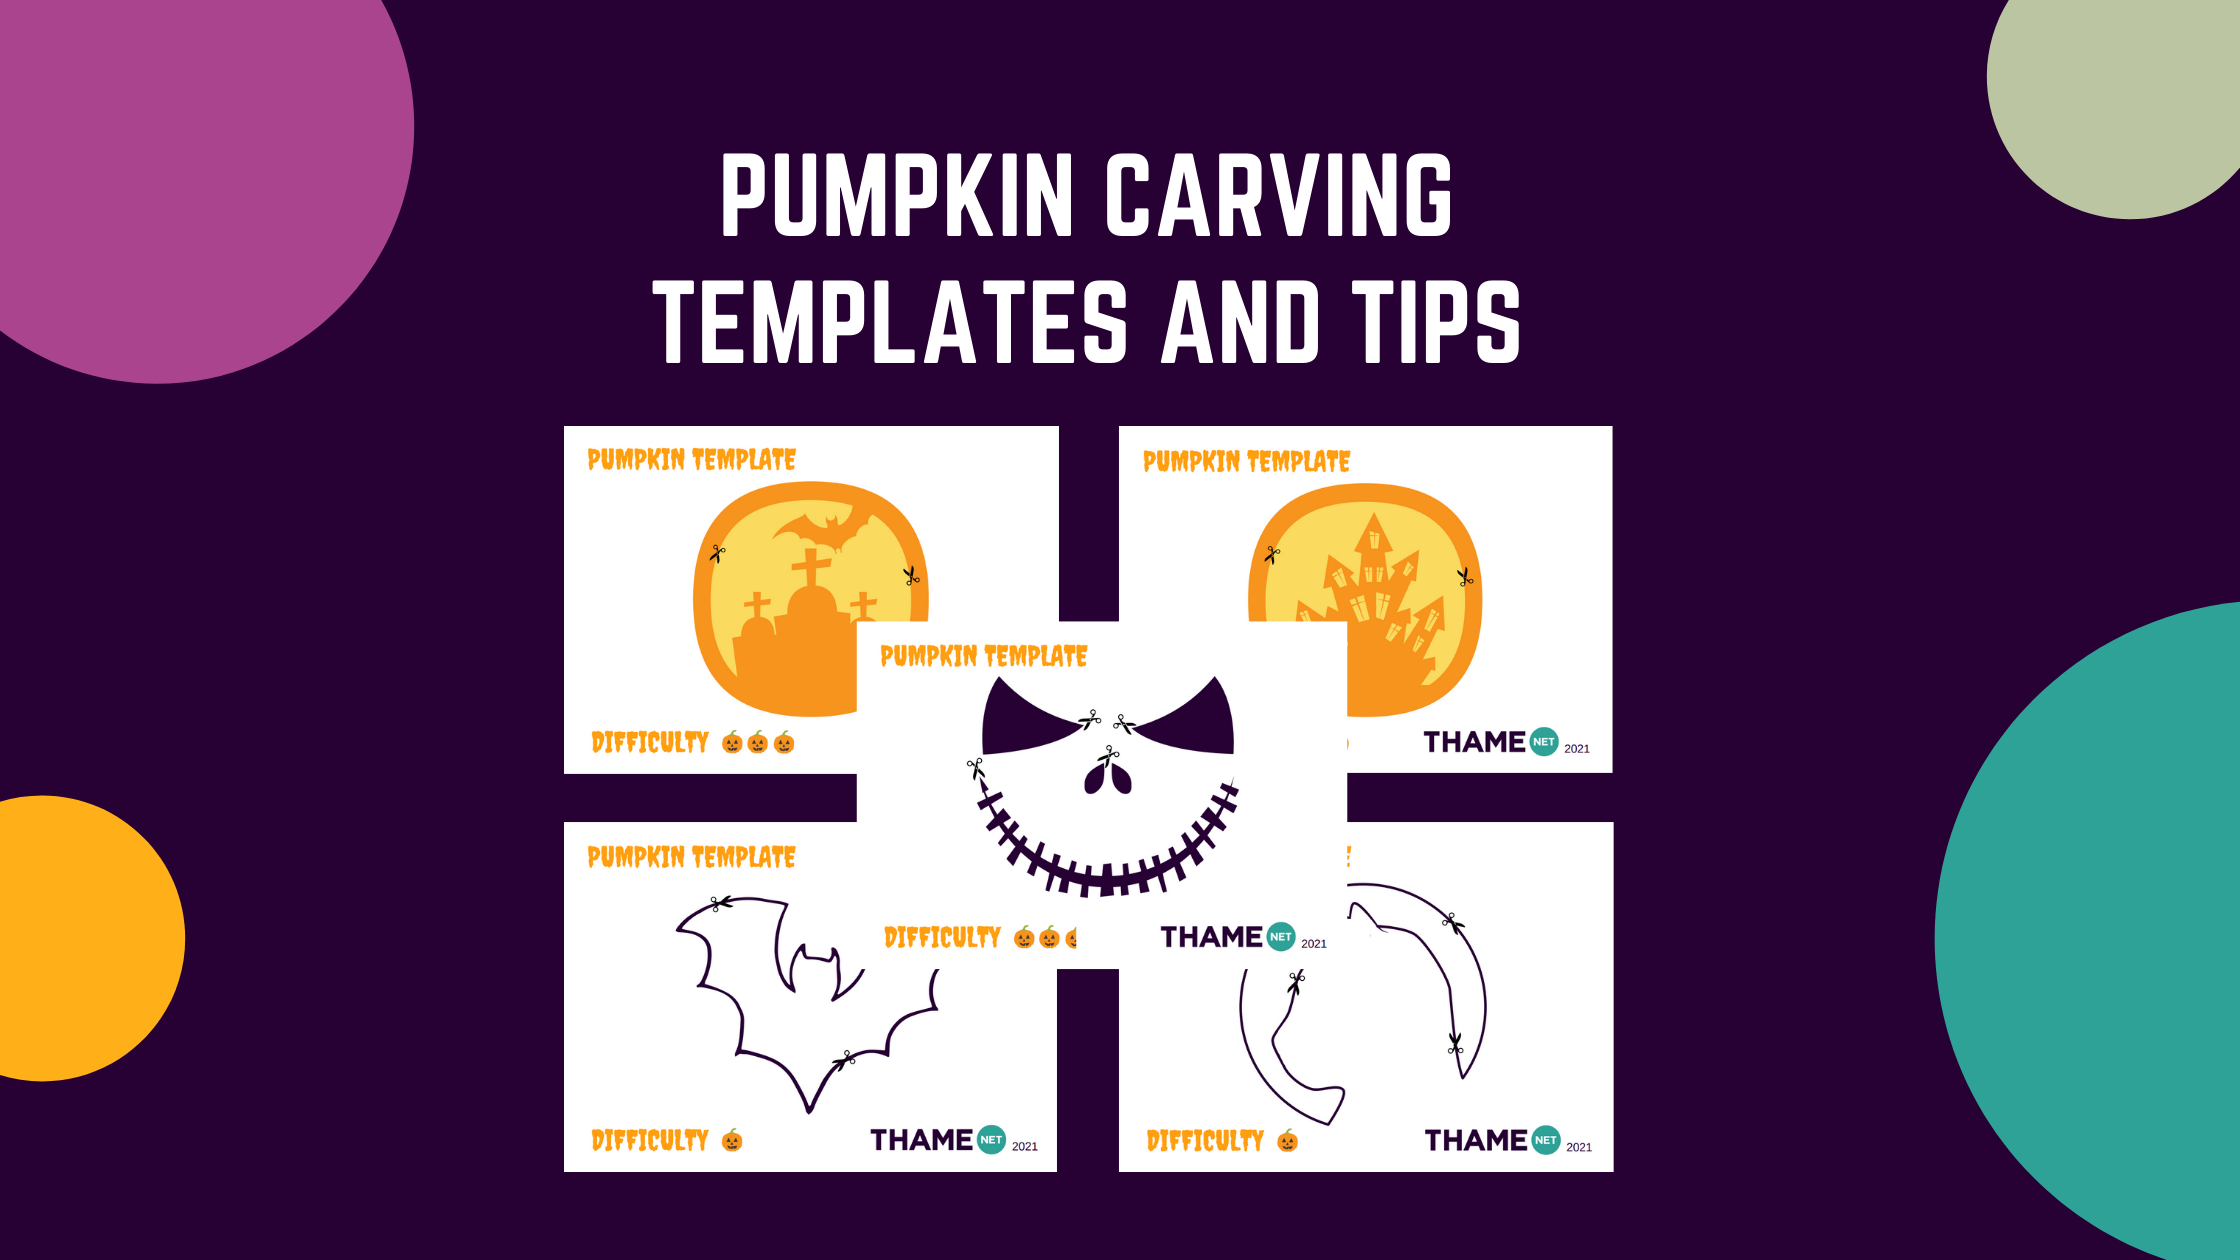 Pumpkin carving templates